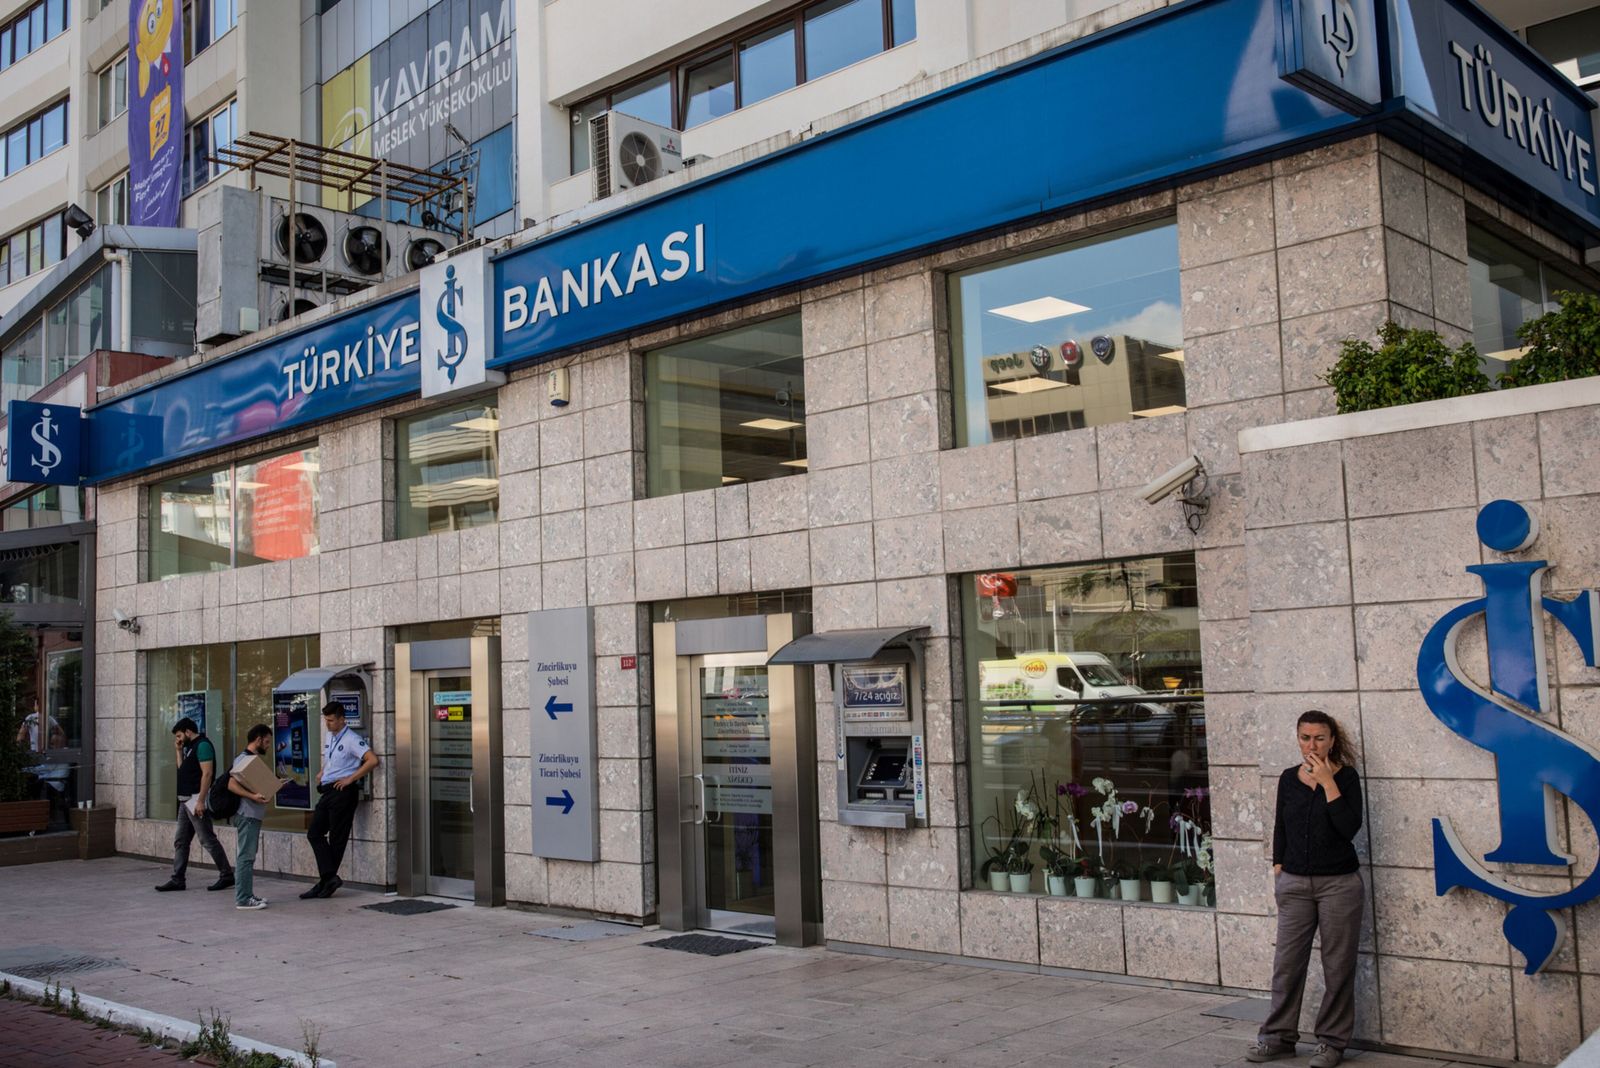 تركيا تخفف عبء سندات الليرة عن البنوك لمحاربة الدولرة